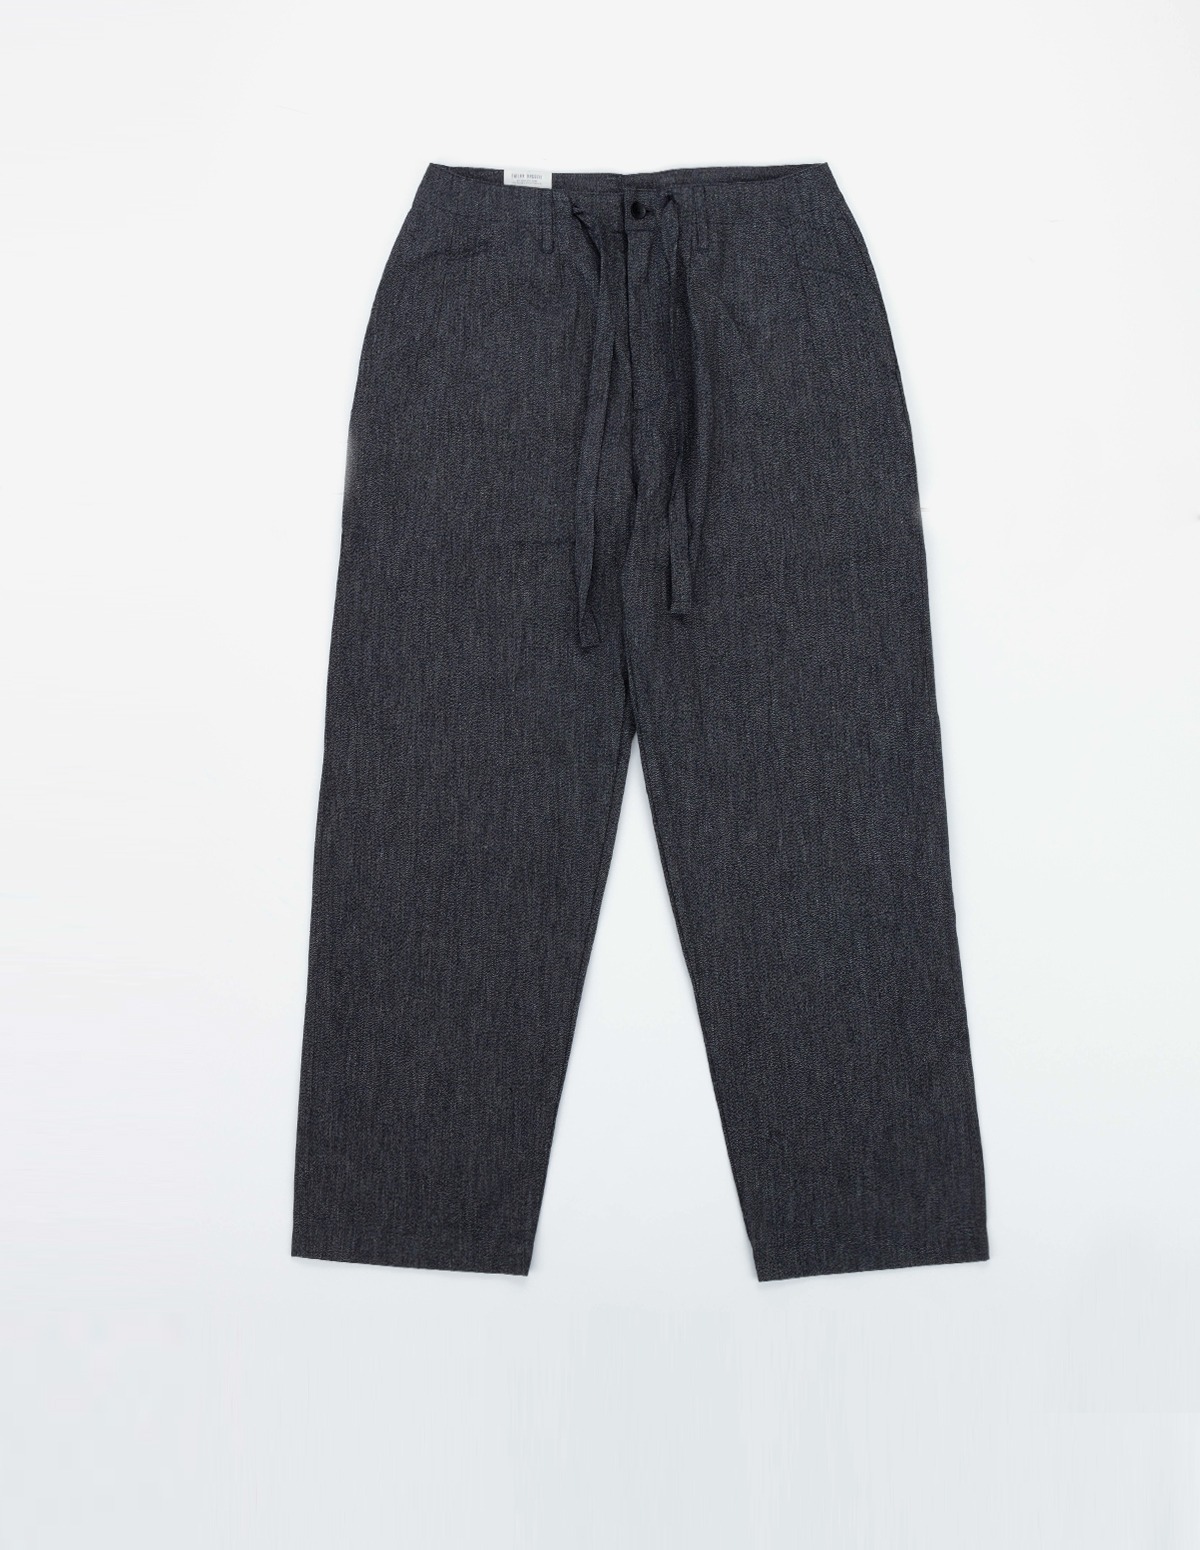 OR-1100B Sleeping Pants (Black)